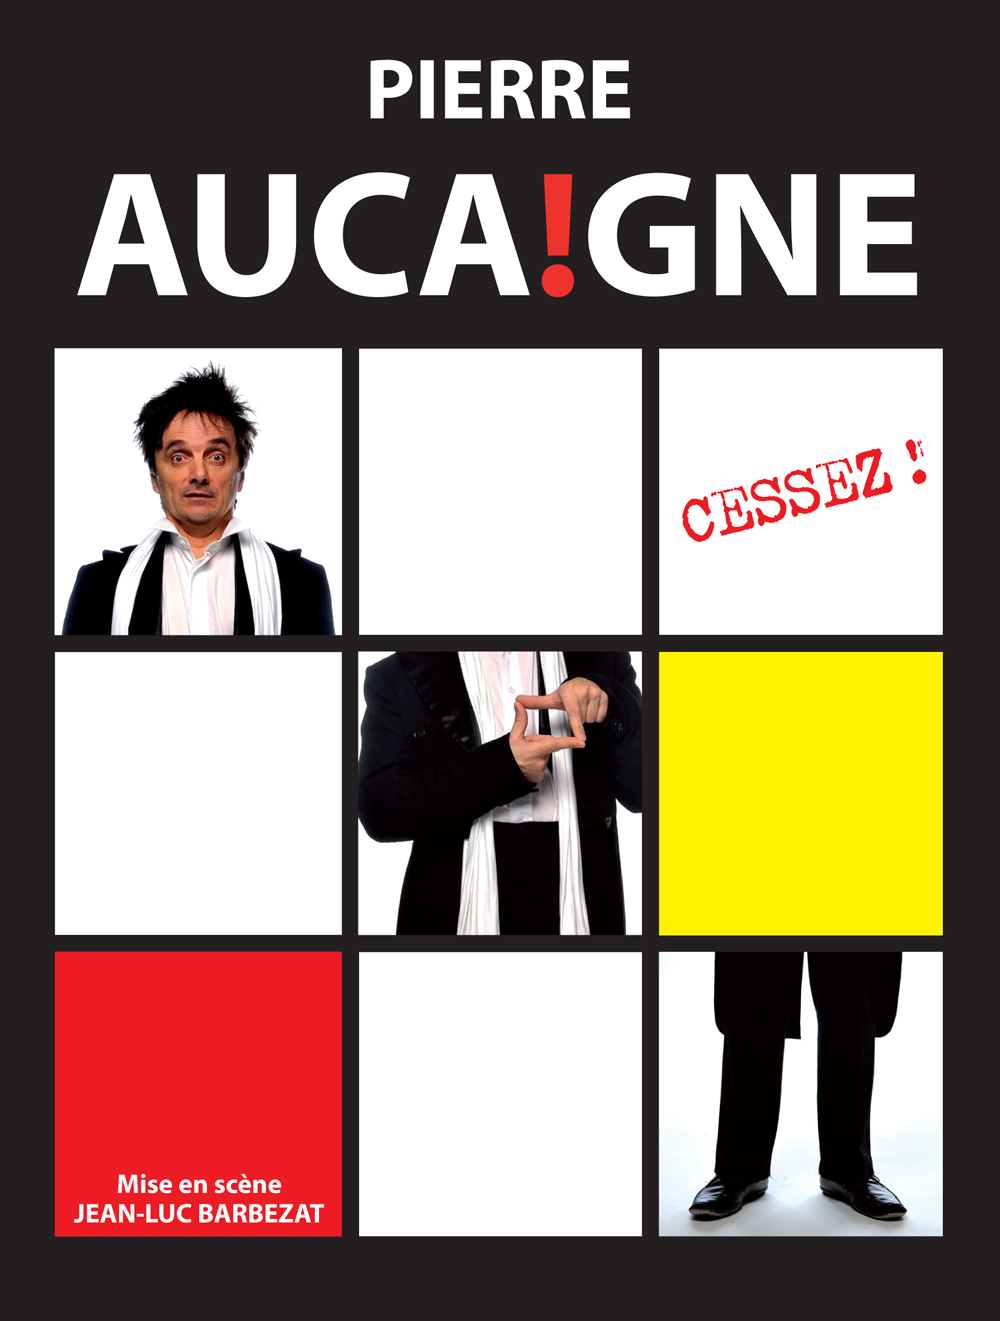 Pierre Aucaigne - "Cessez"